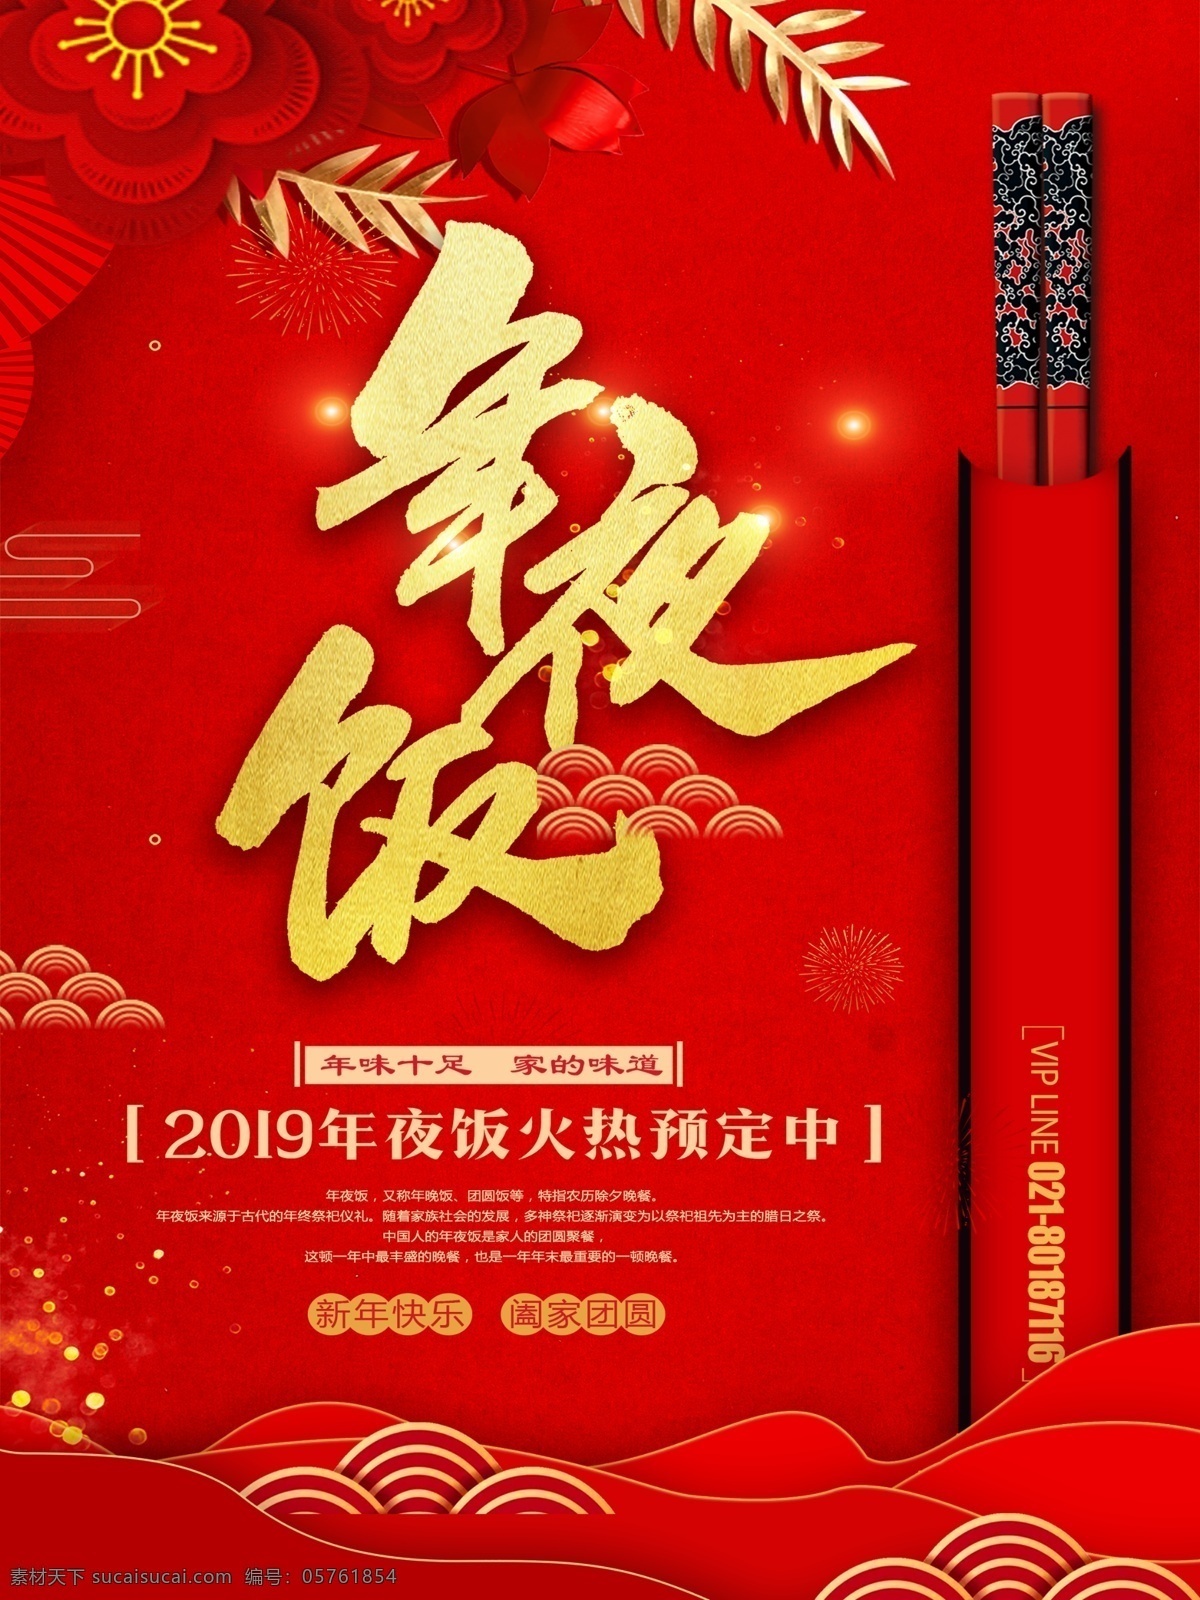 年夜饭 红色 喜庆 背景 饭店 优惠 打折 促销 新年 预定 火热